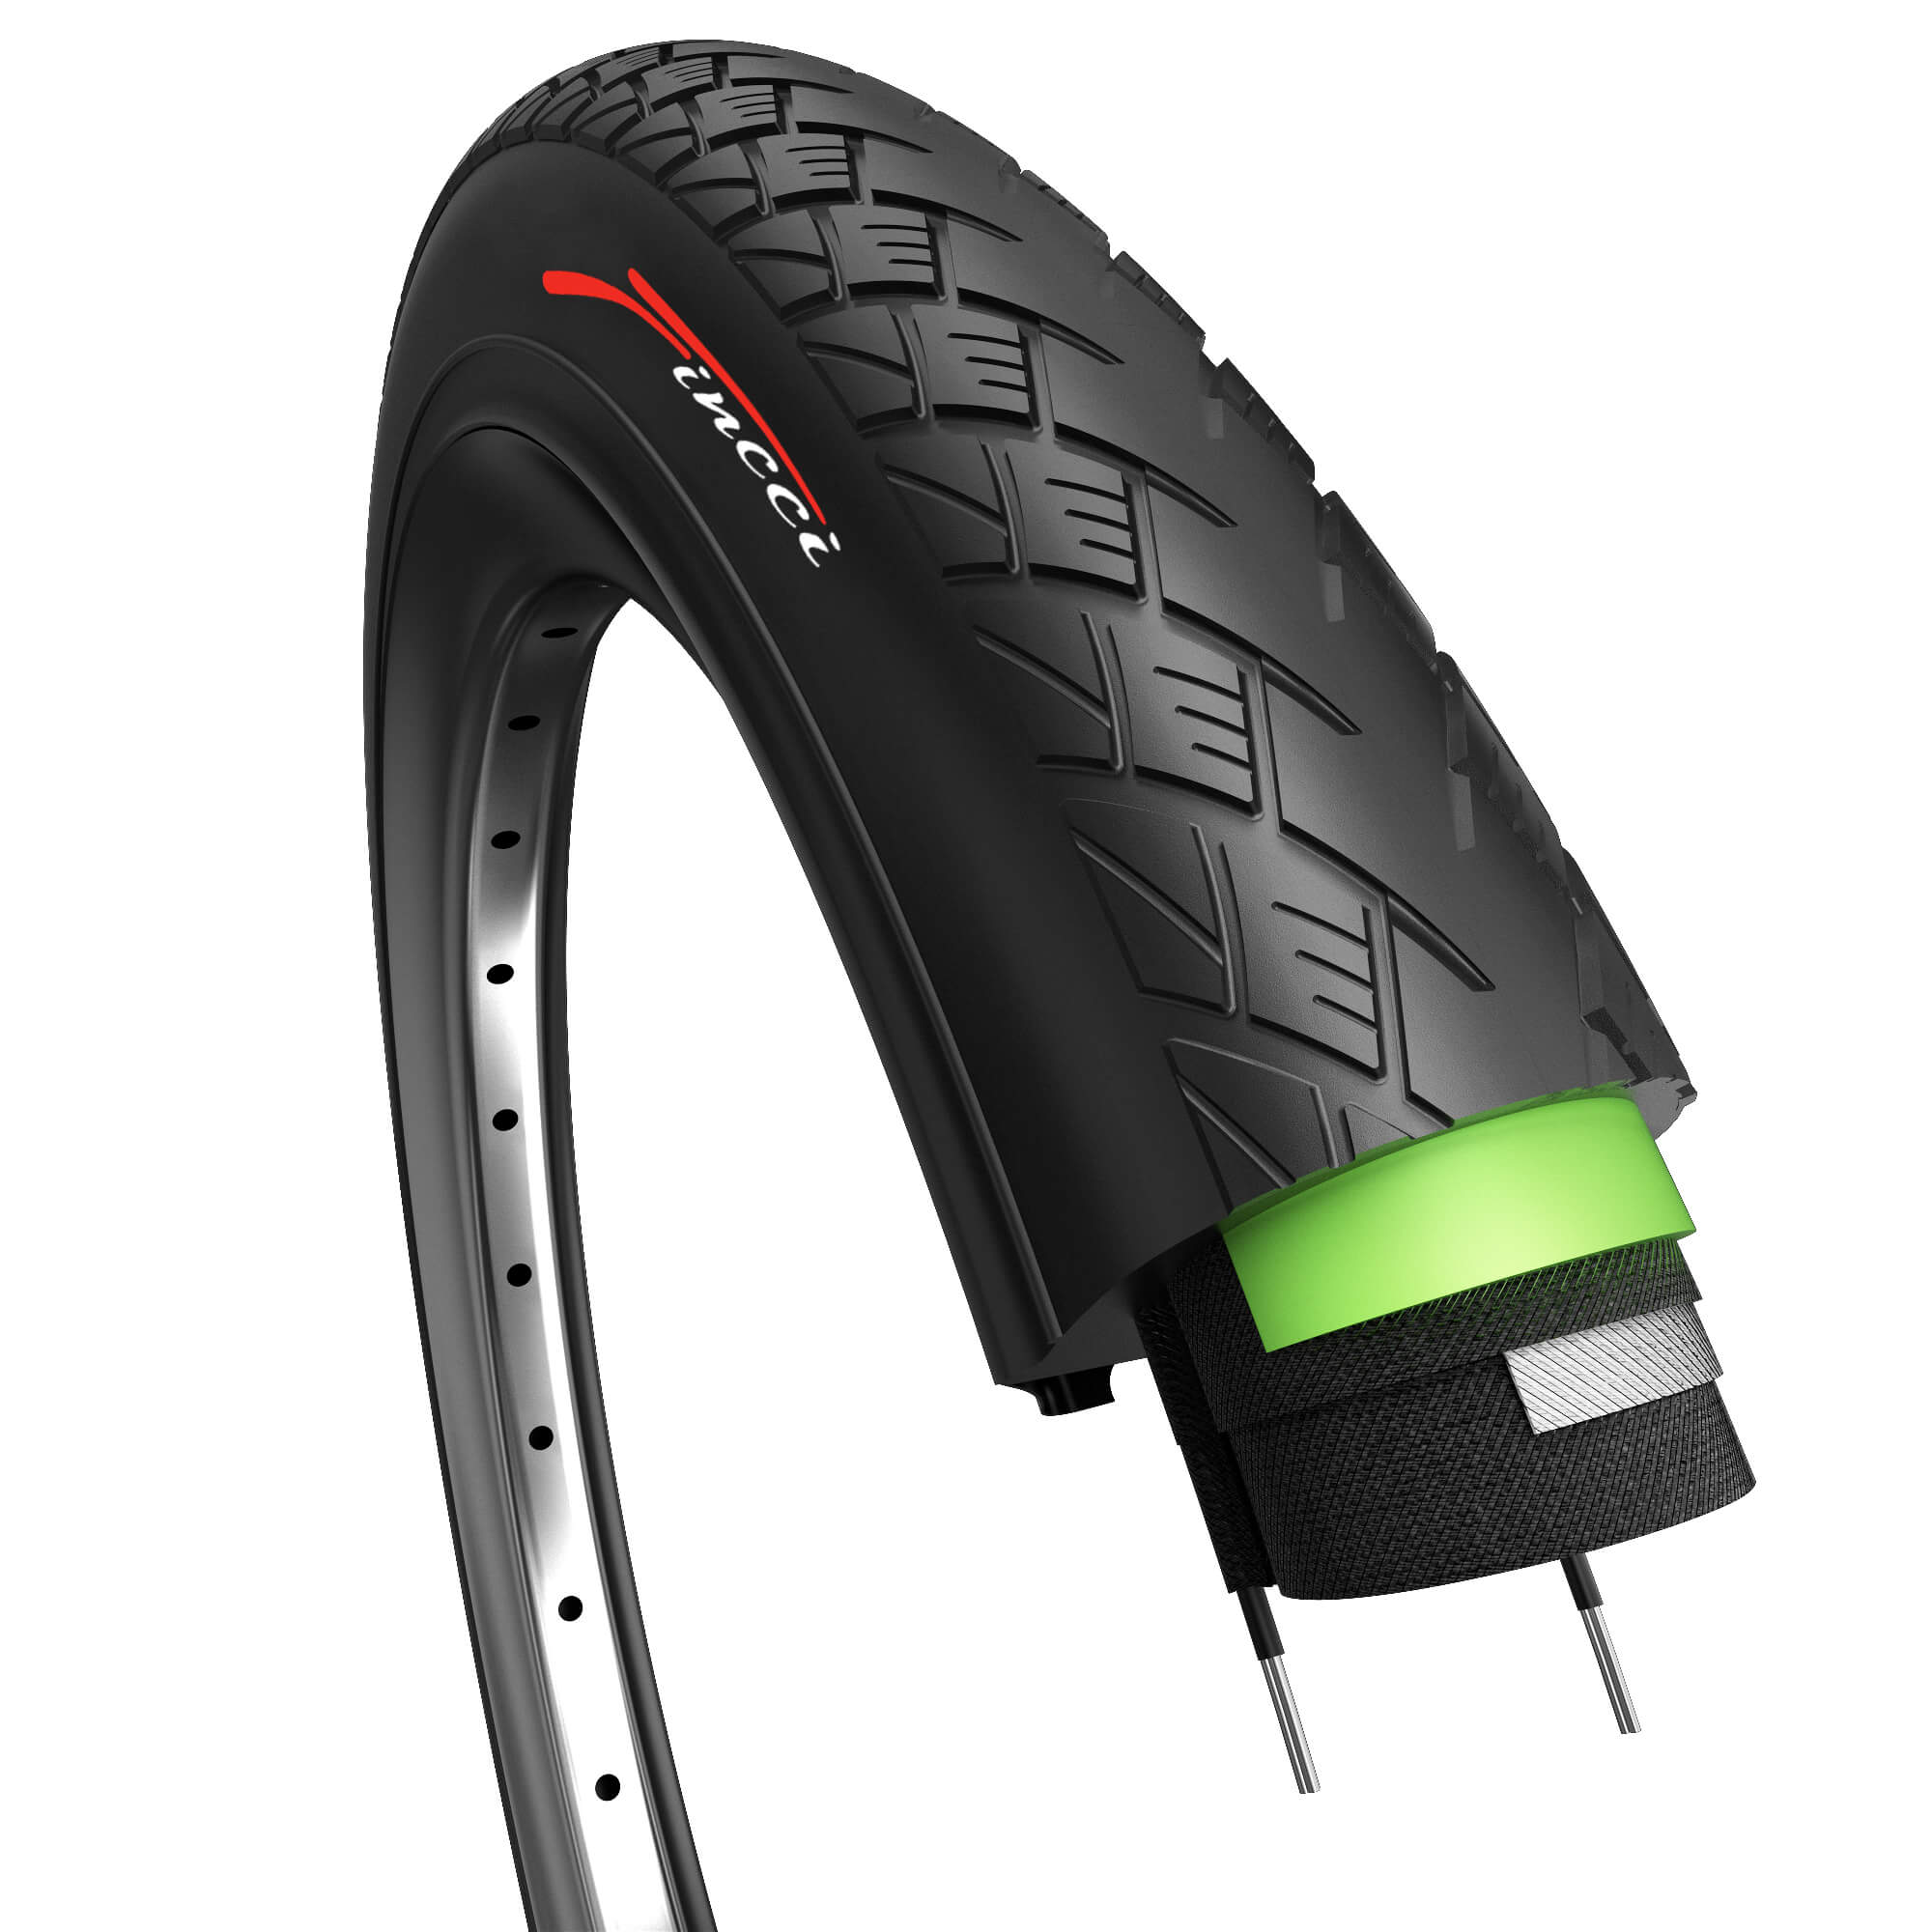 Discriminatie op grond van geslacht knuffel vijver Fincci 700 x 32c 32-622 MTB Tyre with Antipuncture Protection - Buy in  Online Shop